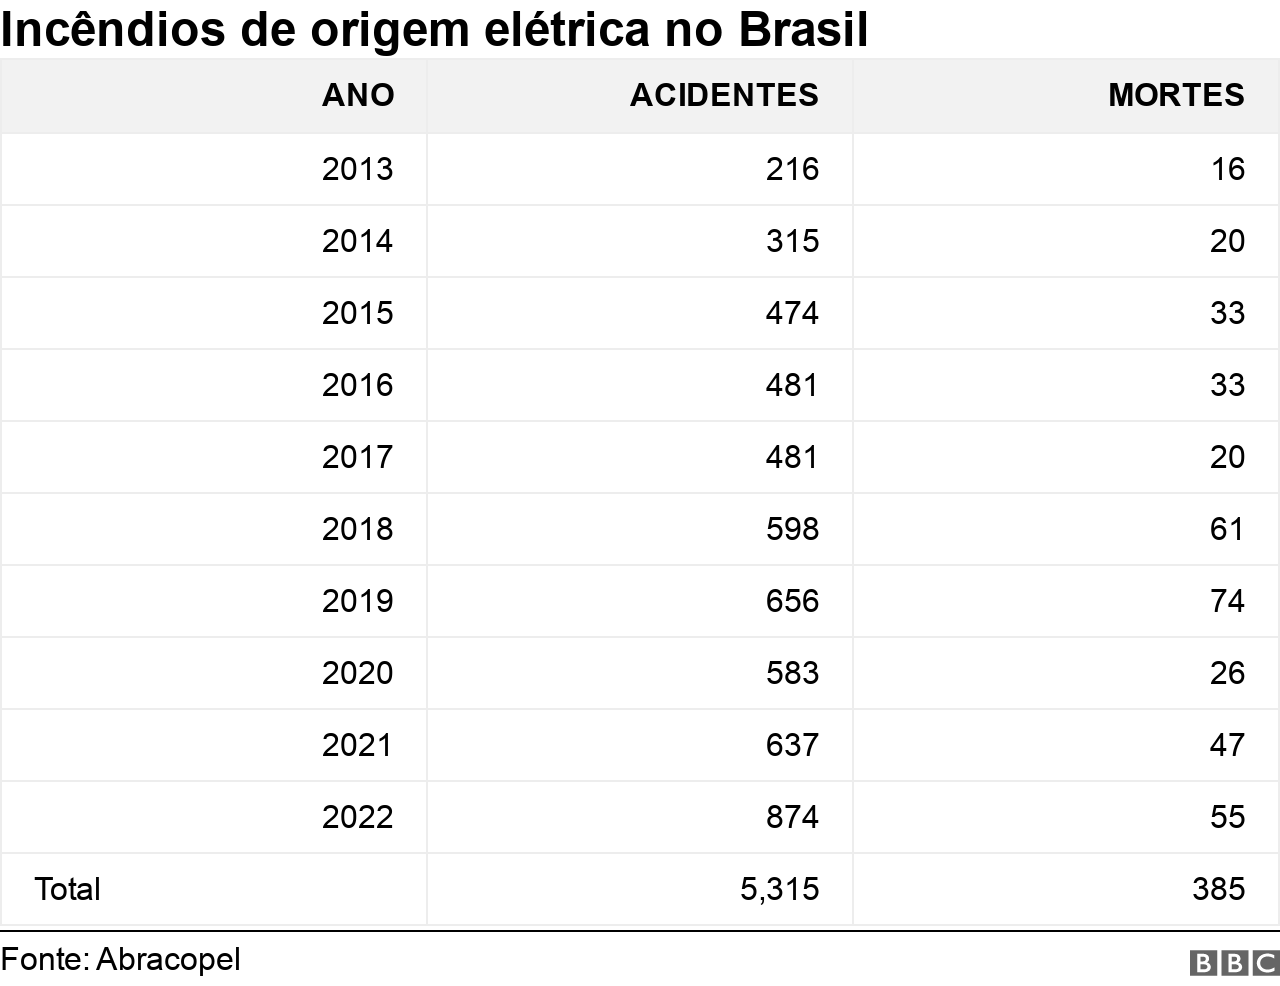 Gráfico sobre incêndios de origem elétrica no Brasil